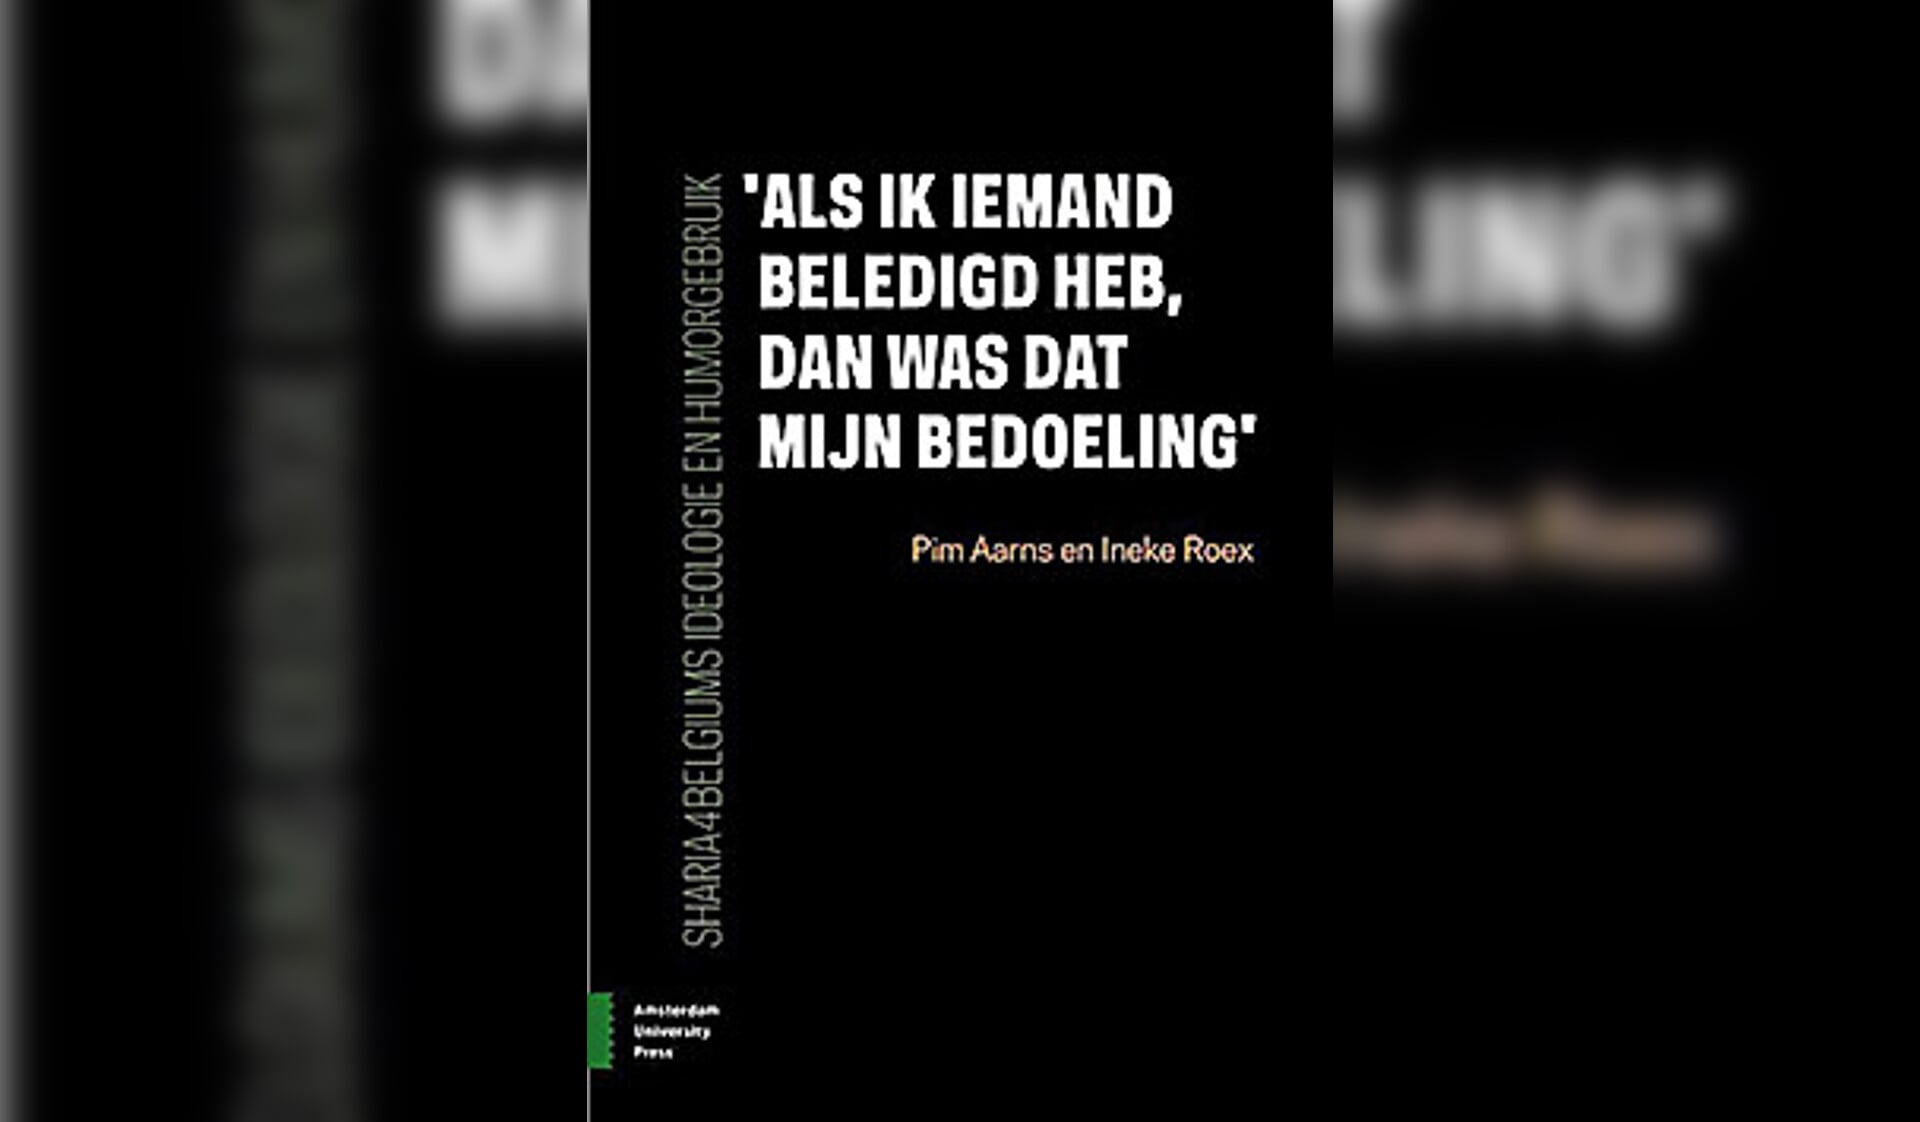 Boek: ‘Als ik iemand beledigd heb, dan was dat mijn bedoeling’. Sharia4Belgiums ideologie en humorgebruik - Pim Aarns en Ineke Roex